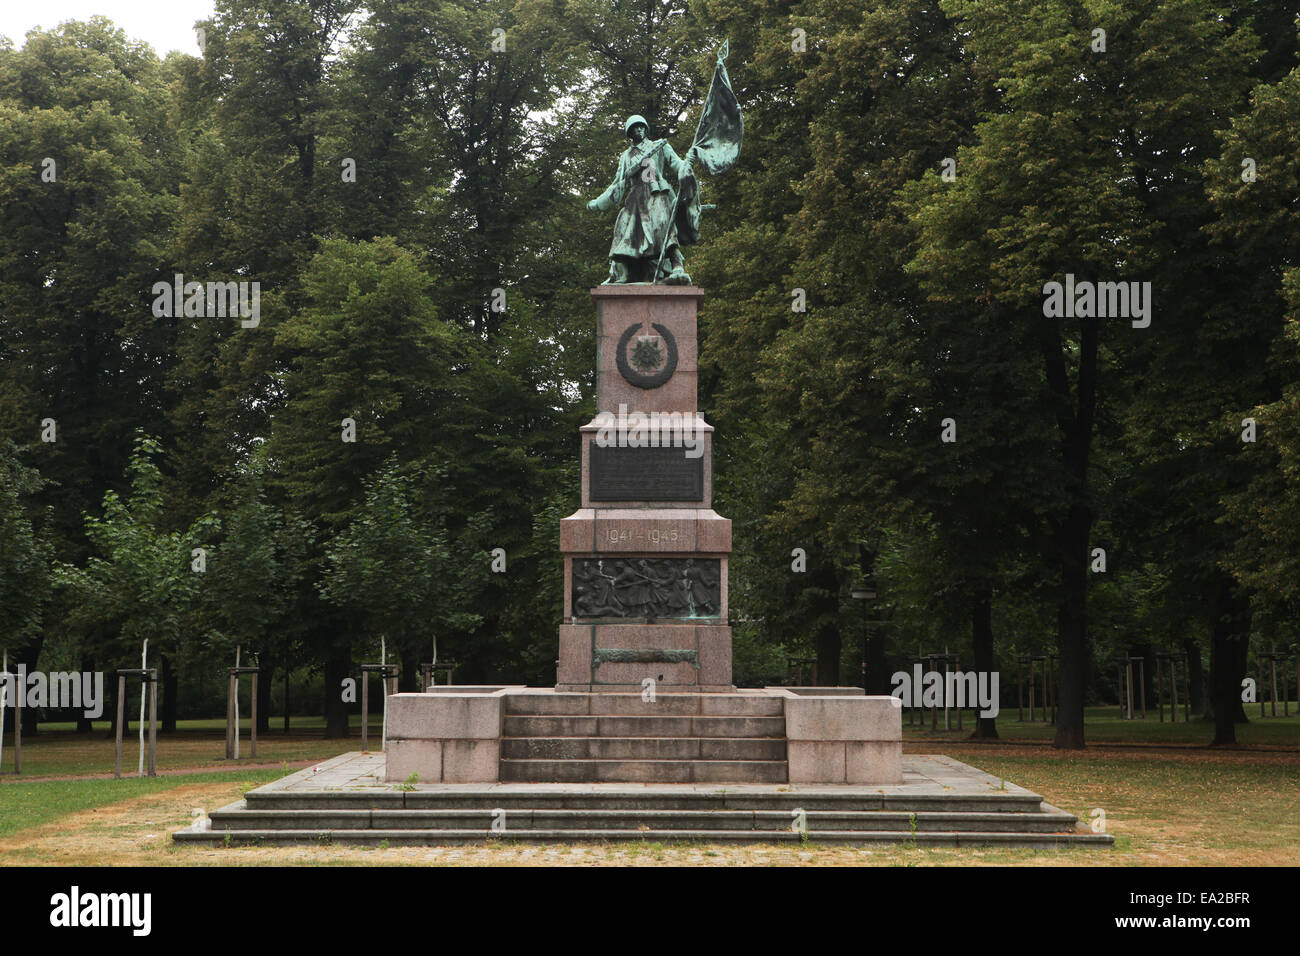 Memoriale per i soldati sovietici caduti nel corso della Seconda Guerra Mondiale da scultore tedesco Otto Rost alla Olbrichtplatz a Dresda in Sassonia, Germania. Foto Stock